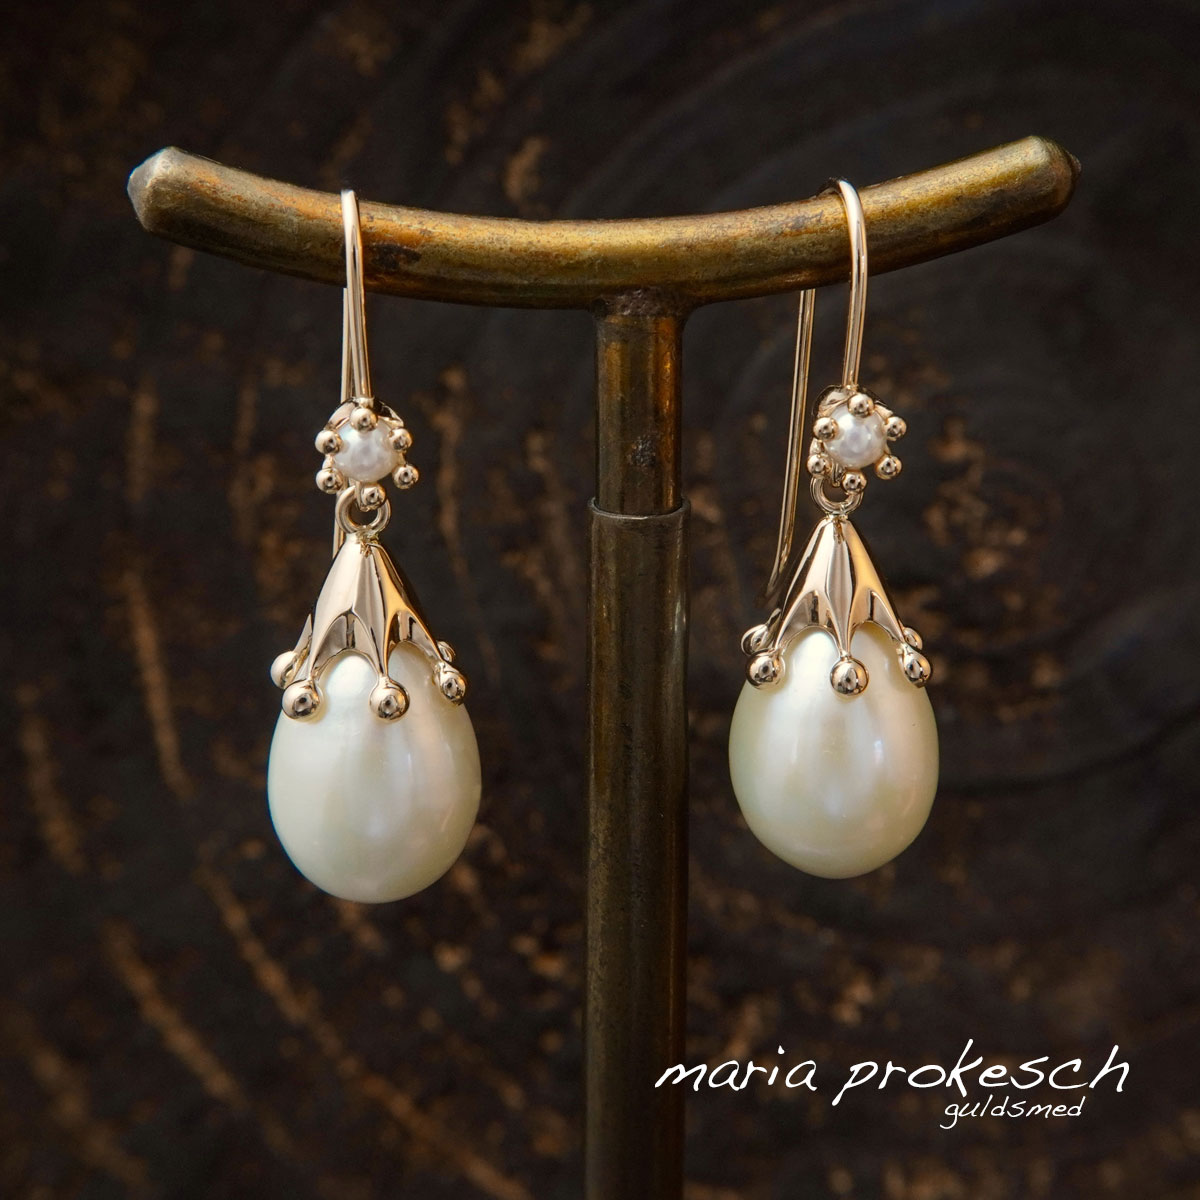 Ørehængere med hvide perler og 18 karat guld kroner i anderledes design. Eventyrlige smykker fra dansk guldsmed